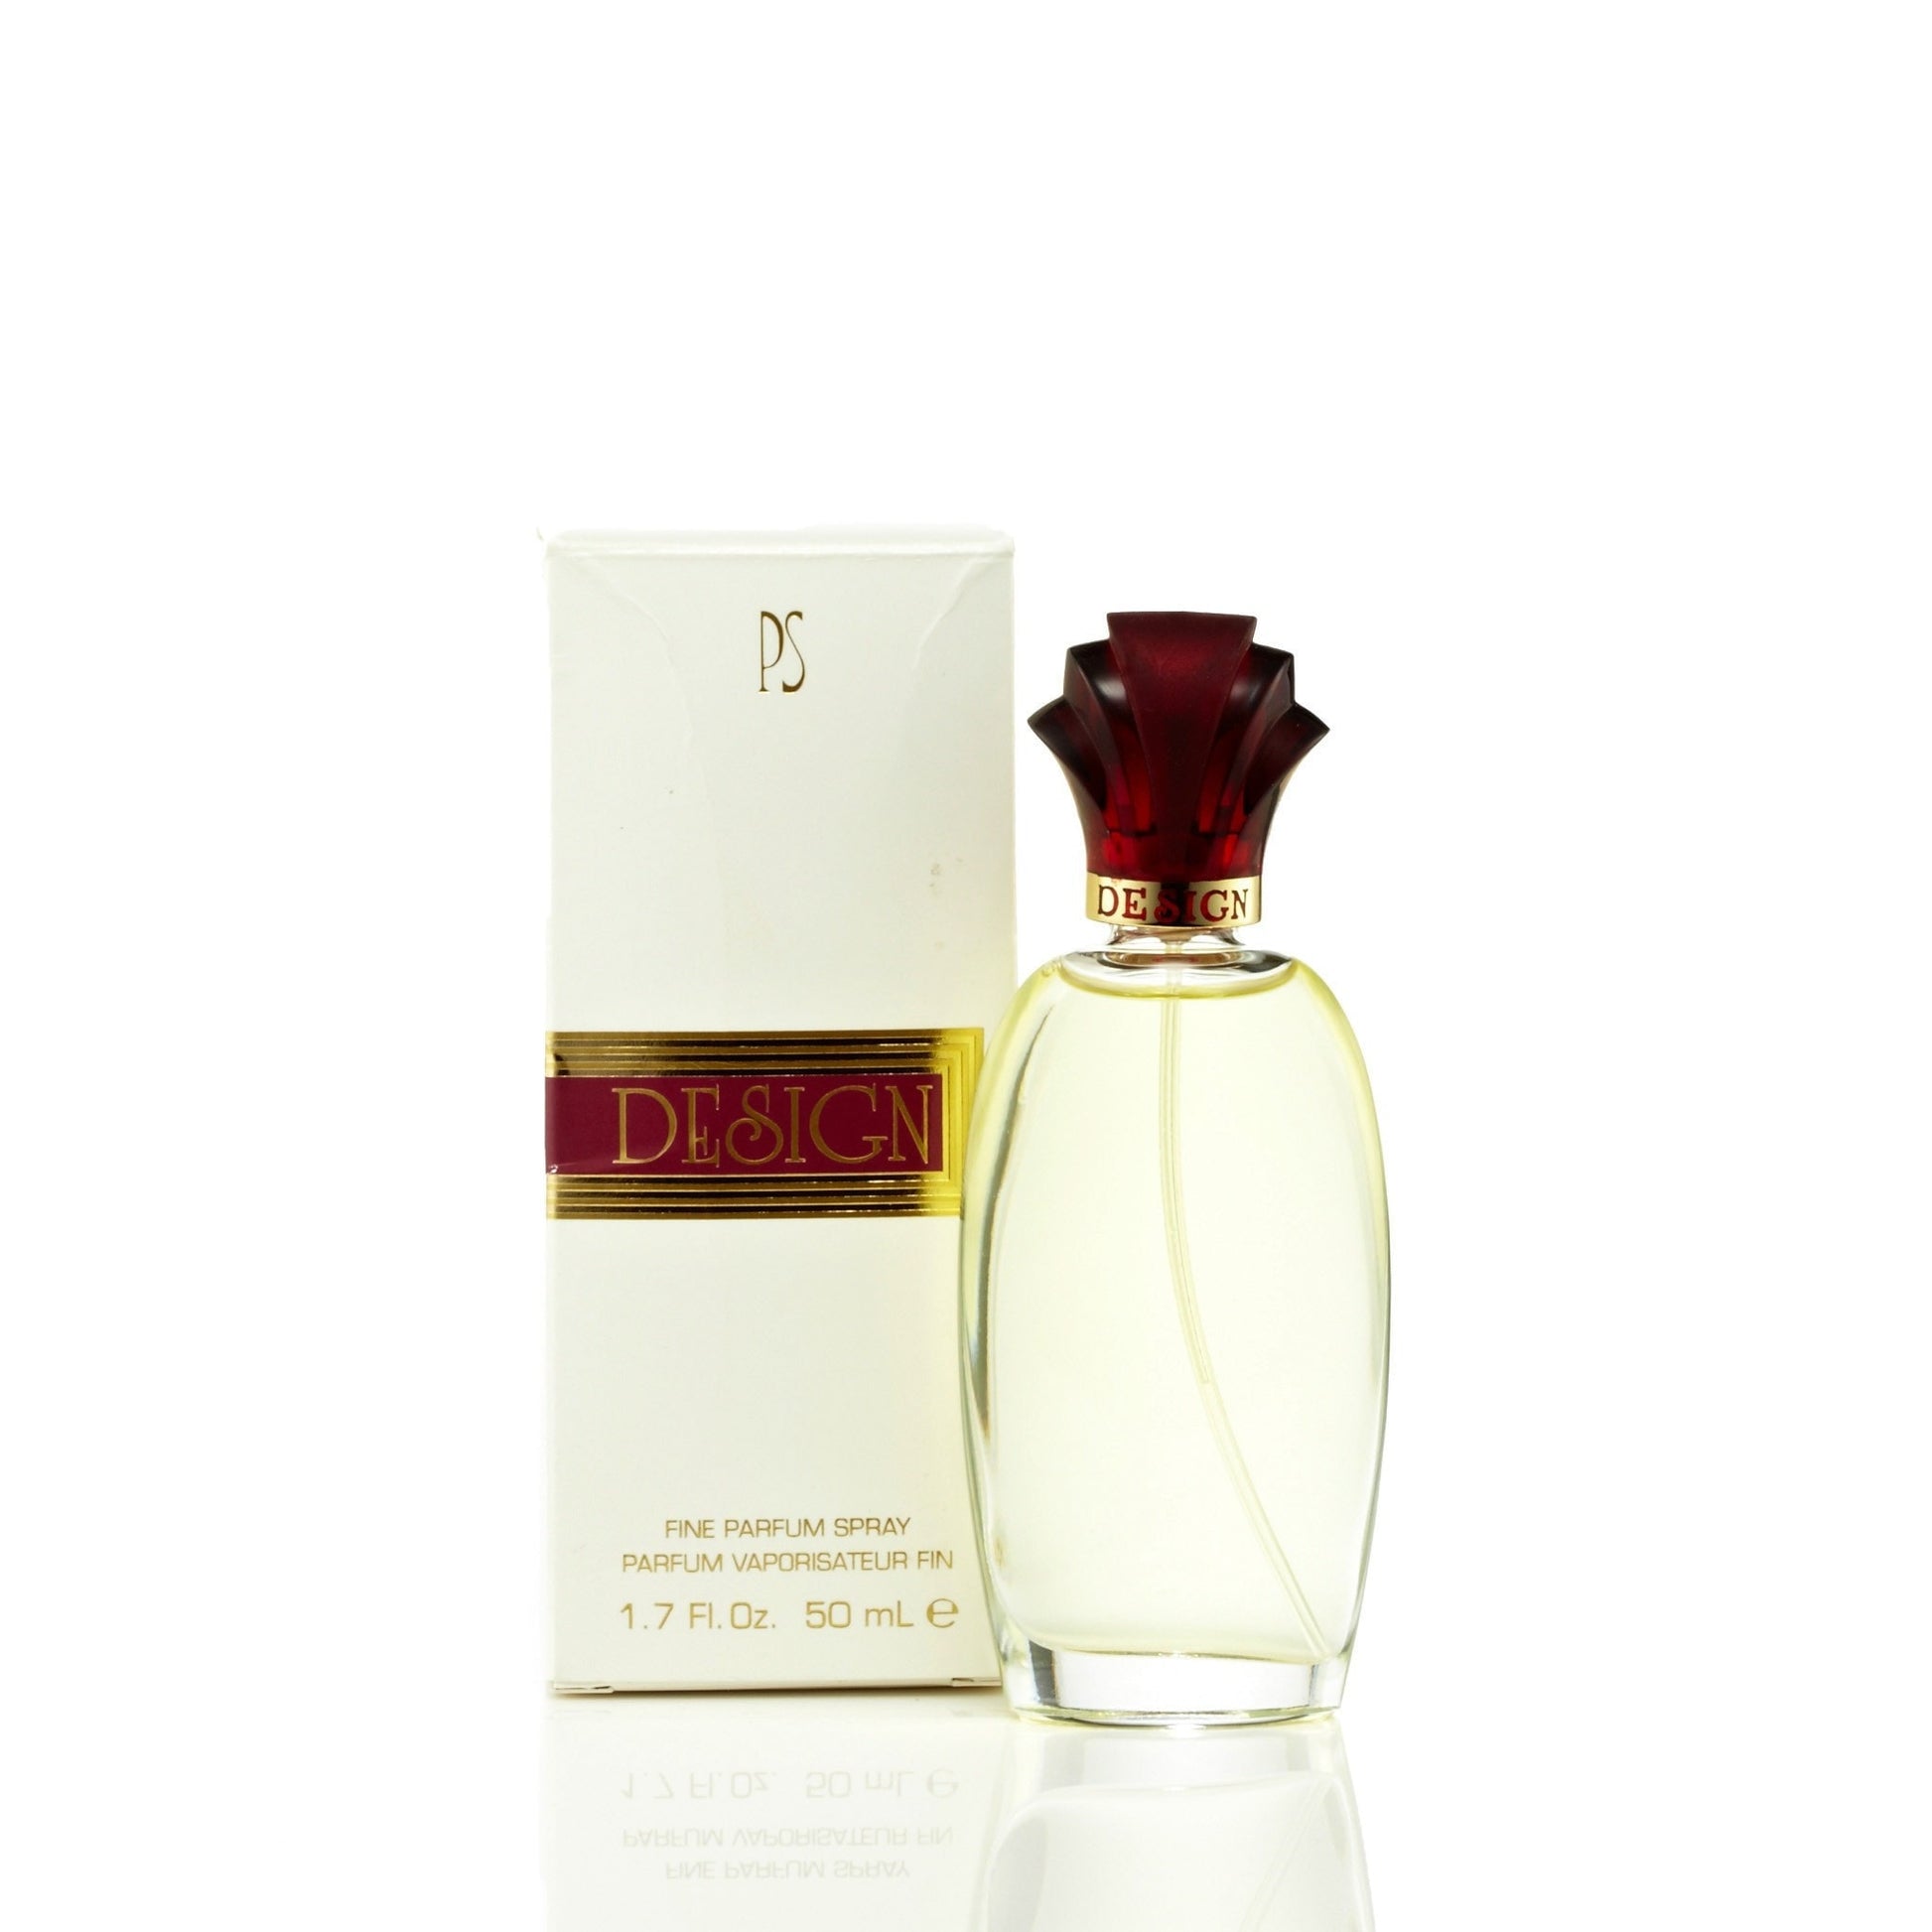 Paul Sebastian Design Eau de Parfum Womens Spray 1.7 oz. Click to open in modal